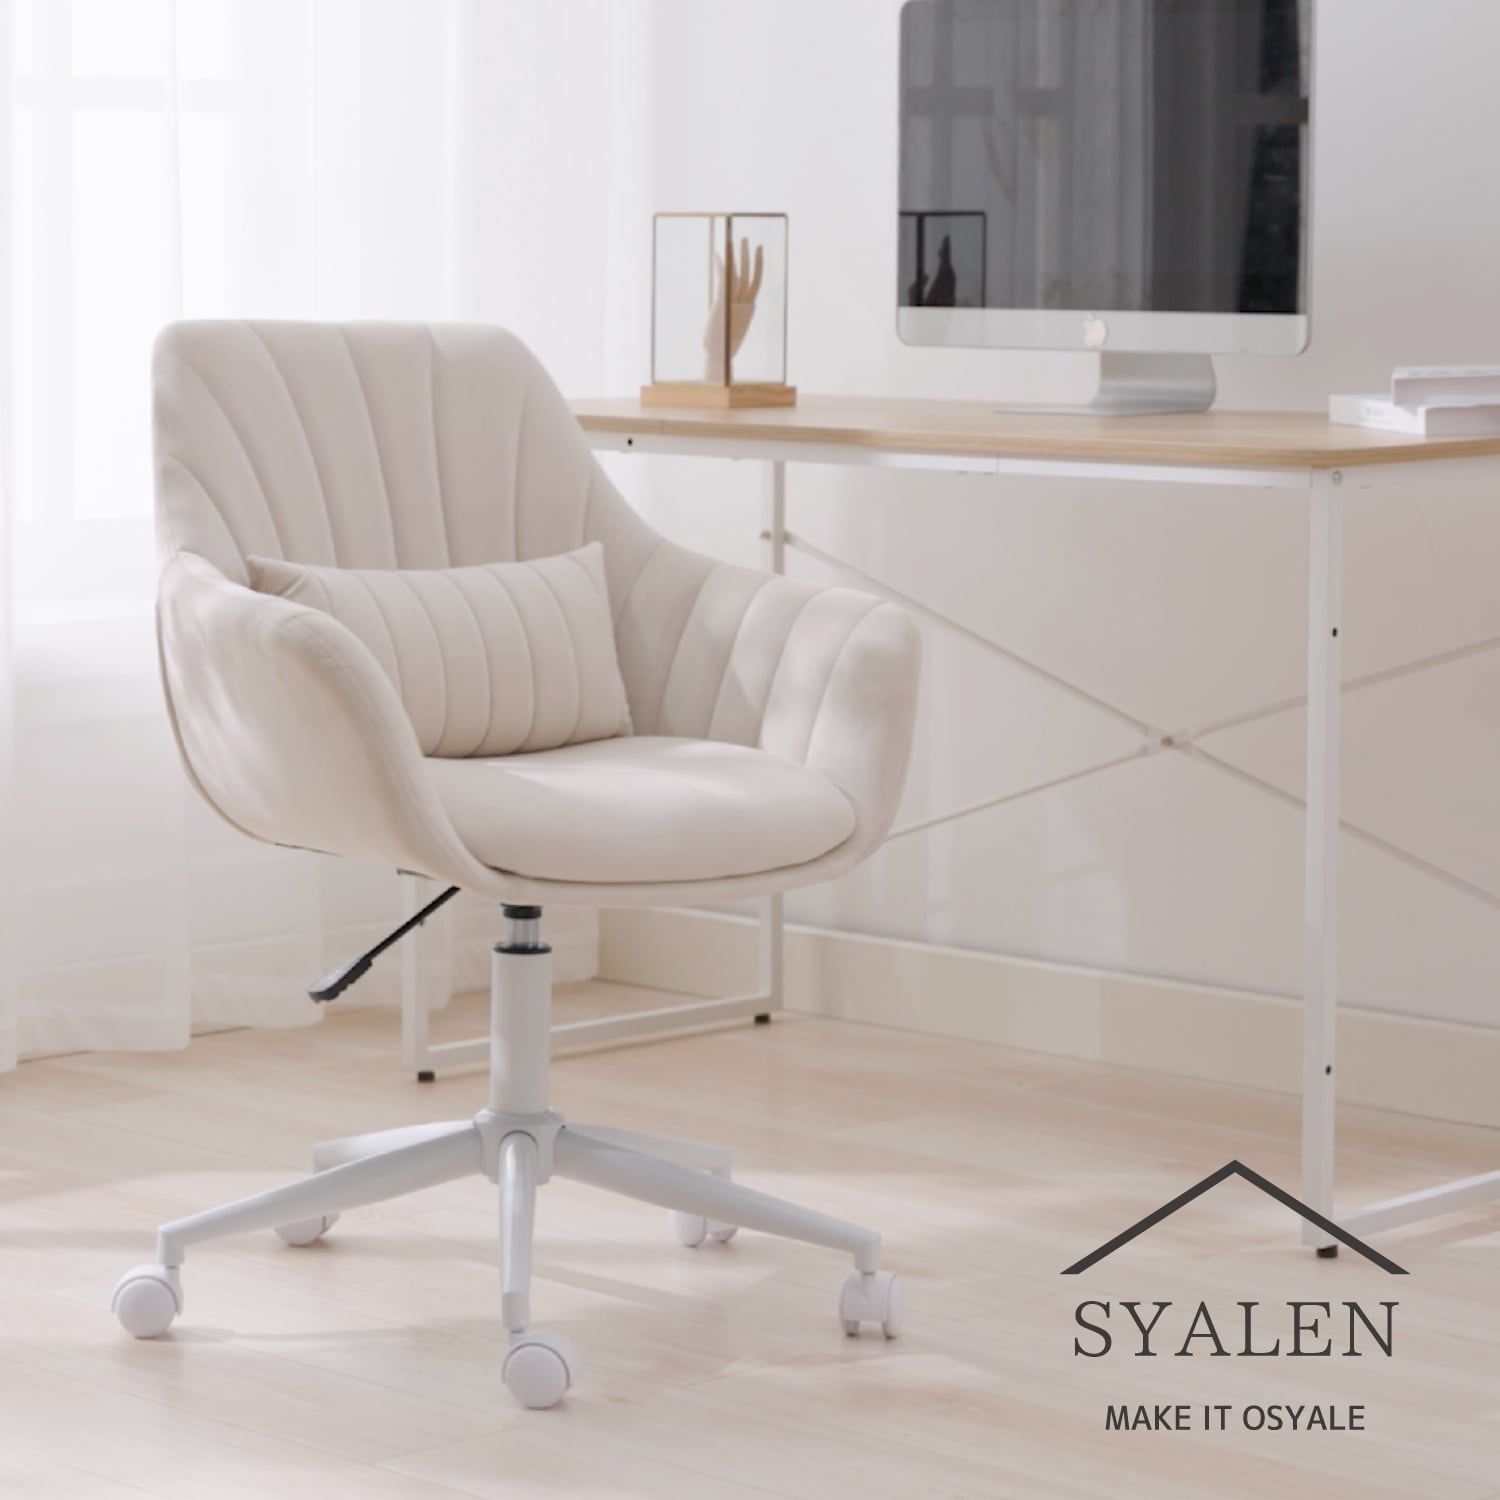 SYALEN 自社オリジナル オフィスチェア 昇降機能付き クッション付き